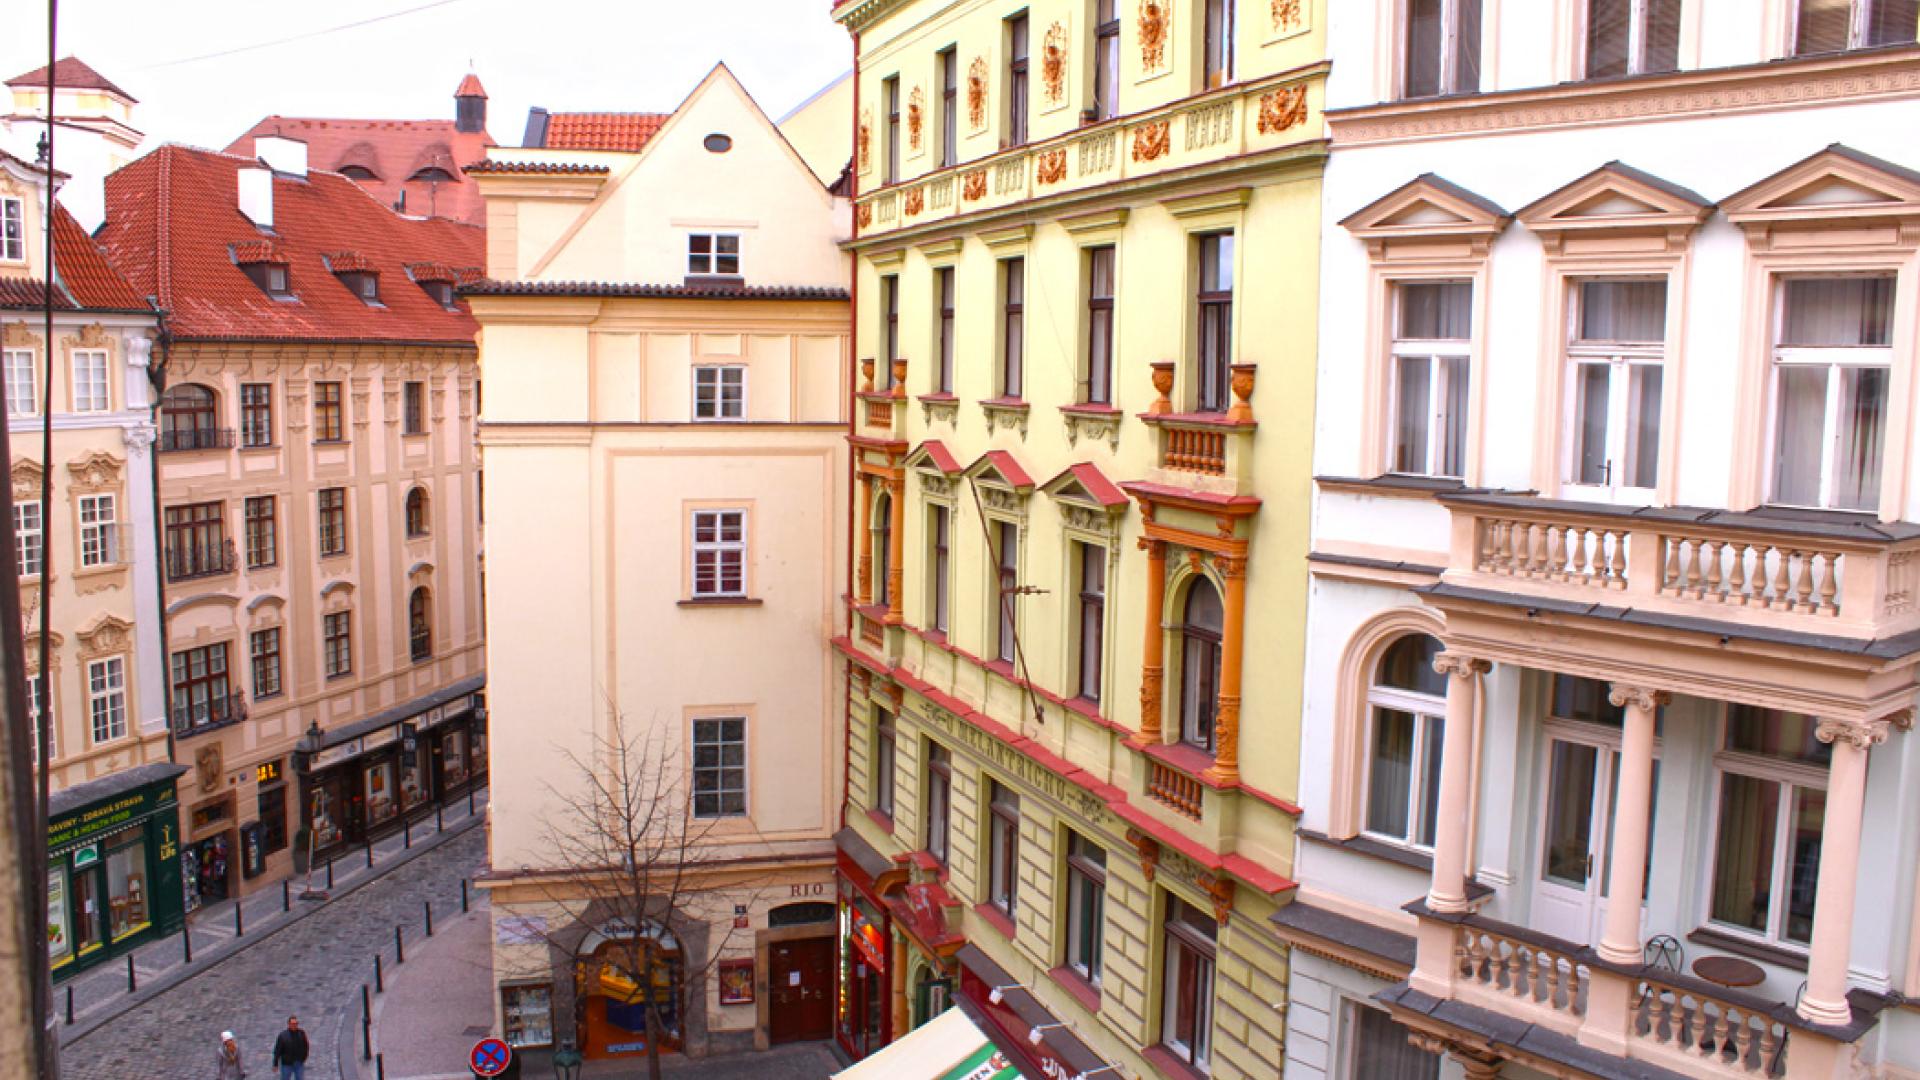 Apartament в Праге - Лилия 3